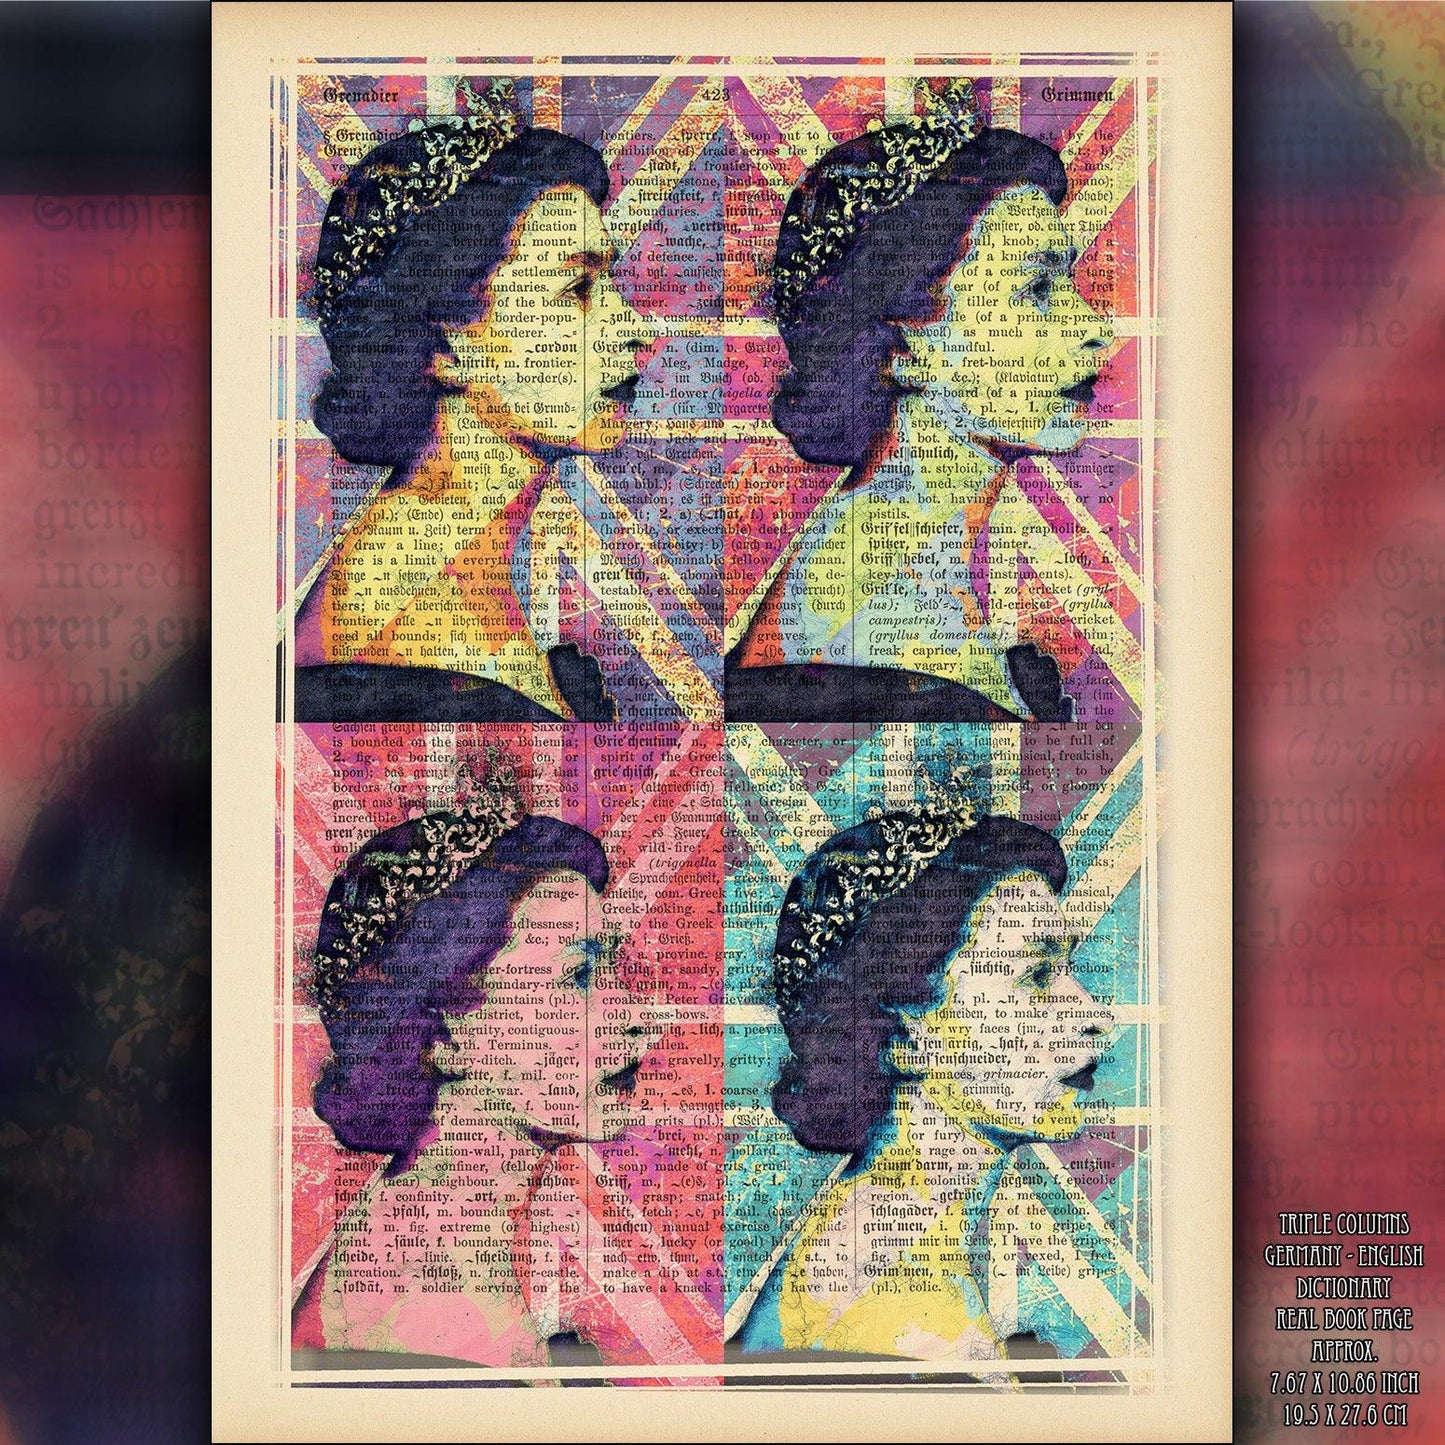 Queen Elizabeth II - Pop Art Andy Warhol Inspired Art Poster - ArtCursor